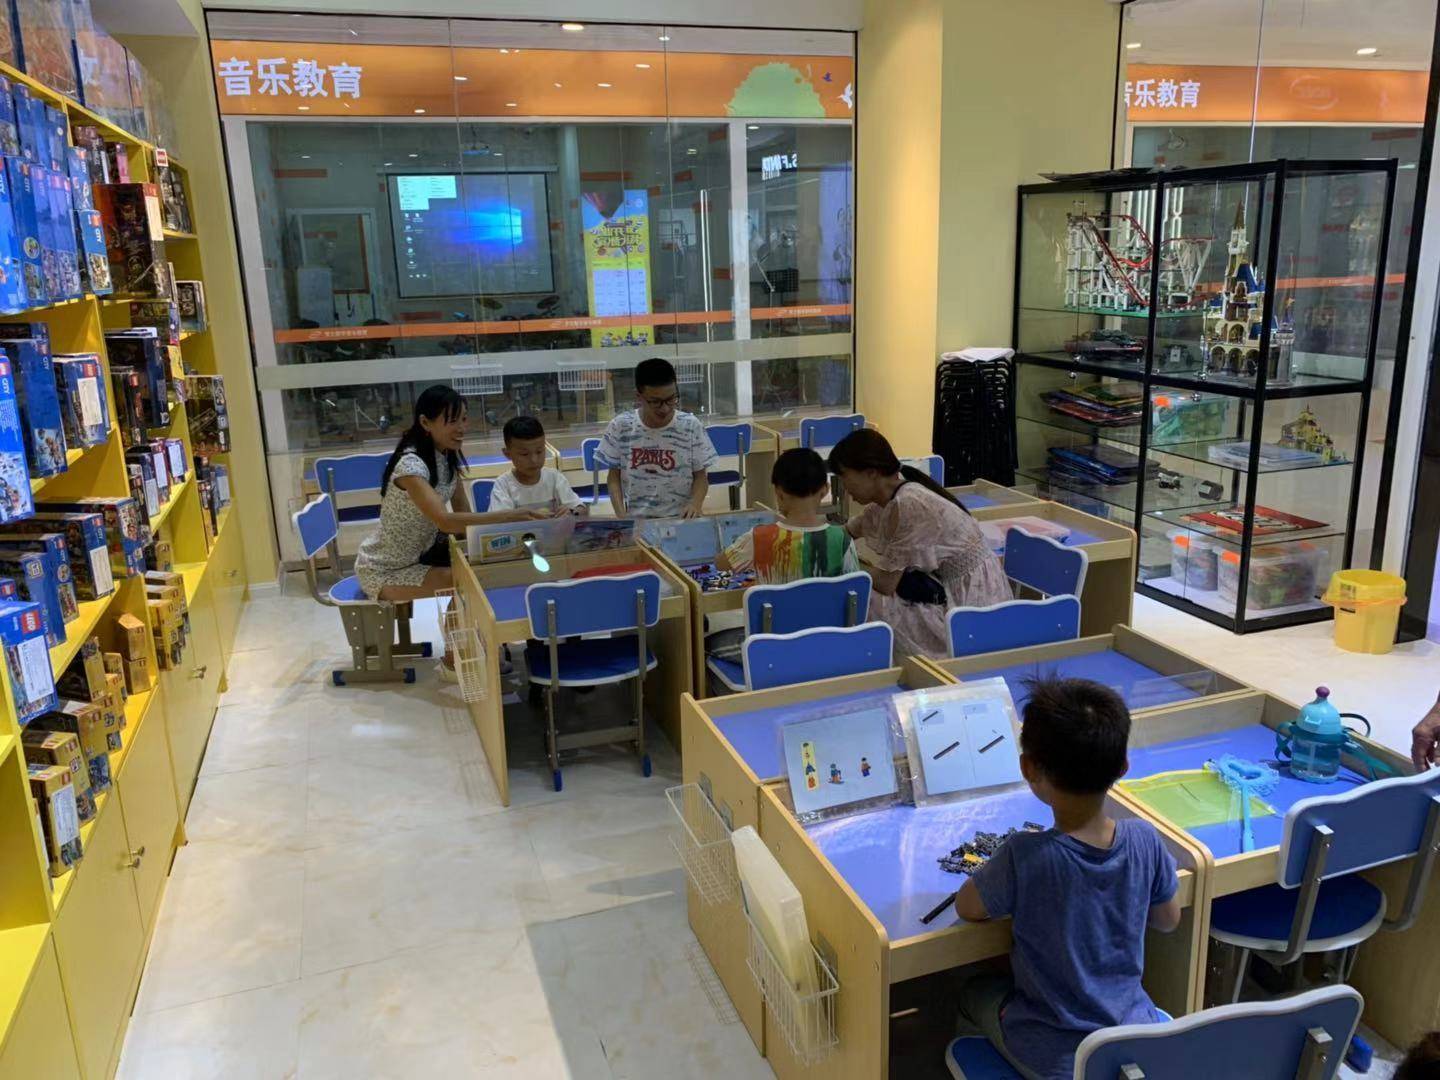 【杭州】6元带孩子来体验童真年代积木的乐趣，90分钟乐高积木体验票